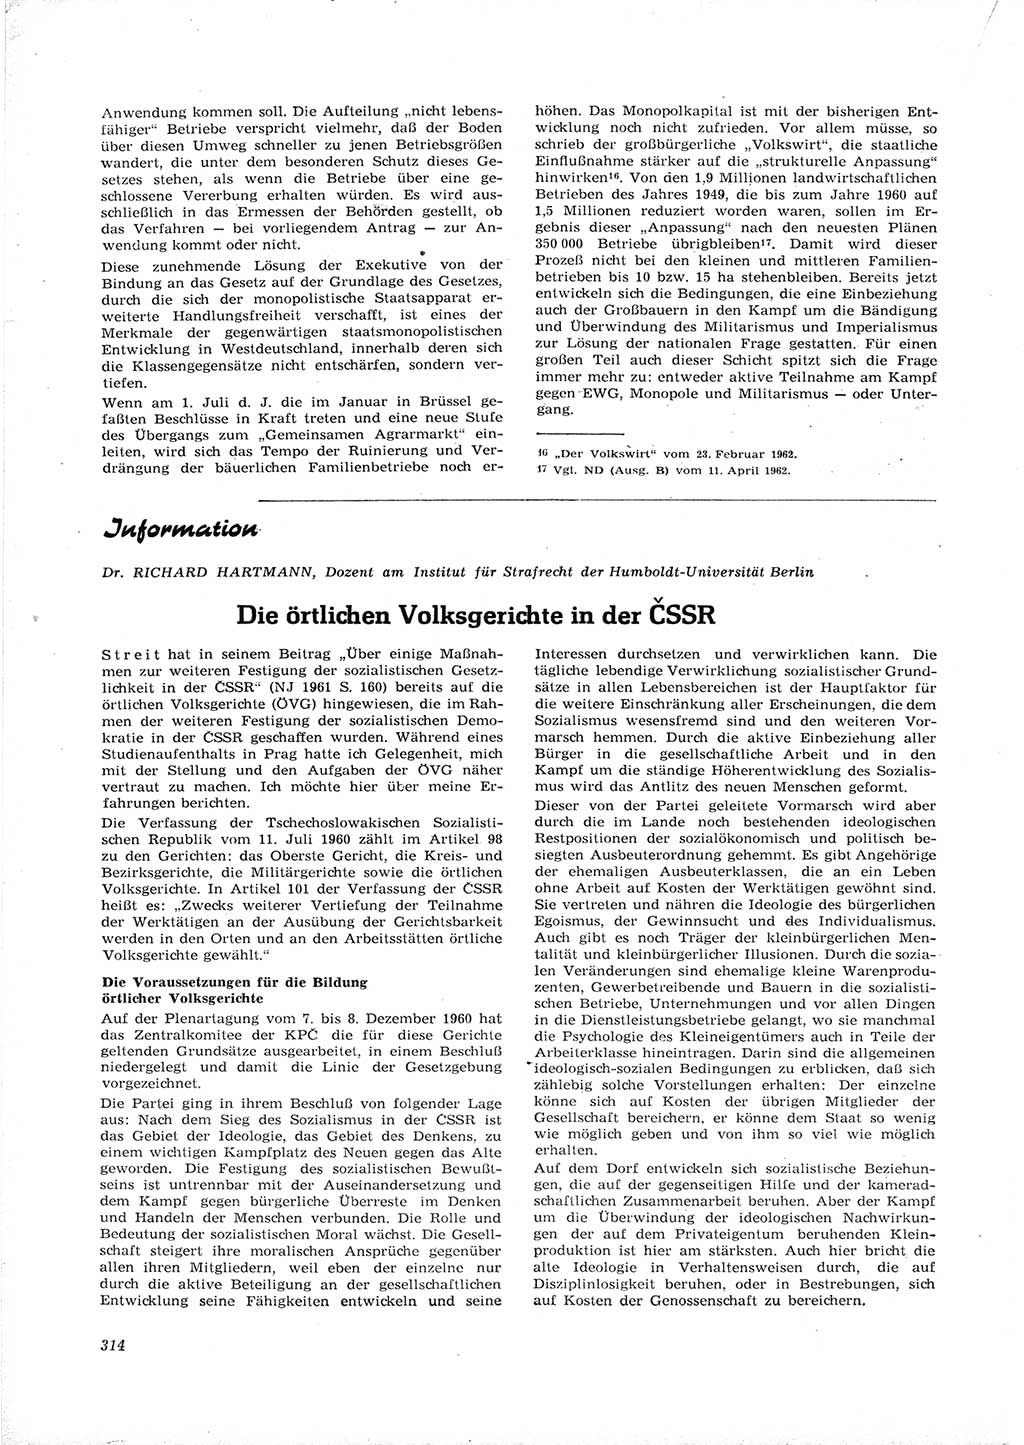 Neue Justiz (NJ), Zeitschrift für Recht und Rechtswissenschaft [Deutsche Demokratische Republik (DDR)], 16. Jahrgang 1962, Seite 314 (NJ DDR 1962, S. 314)